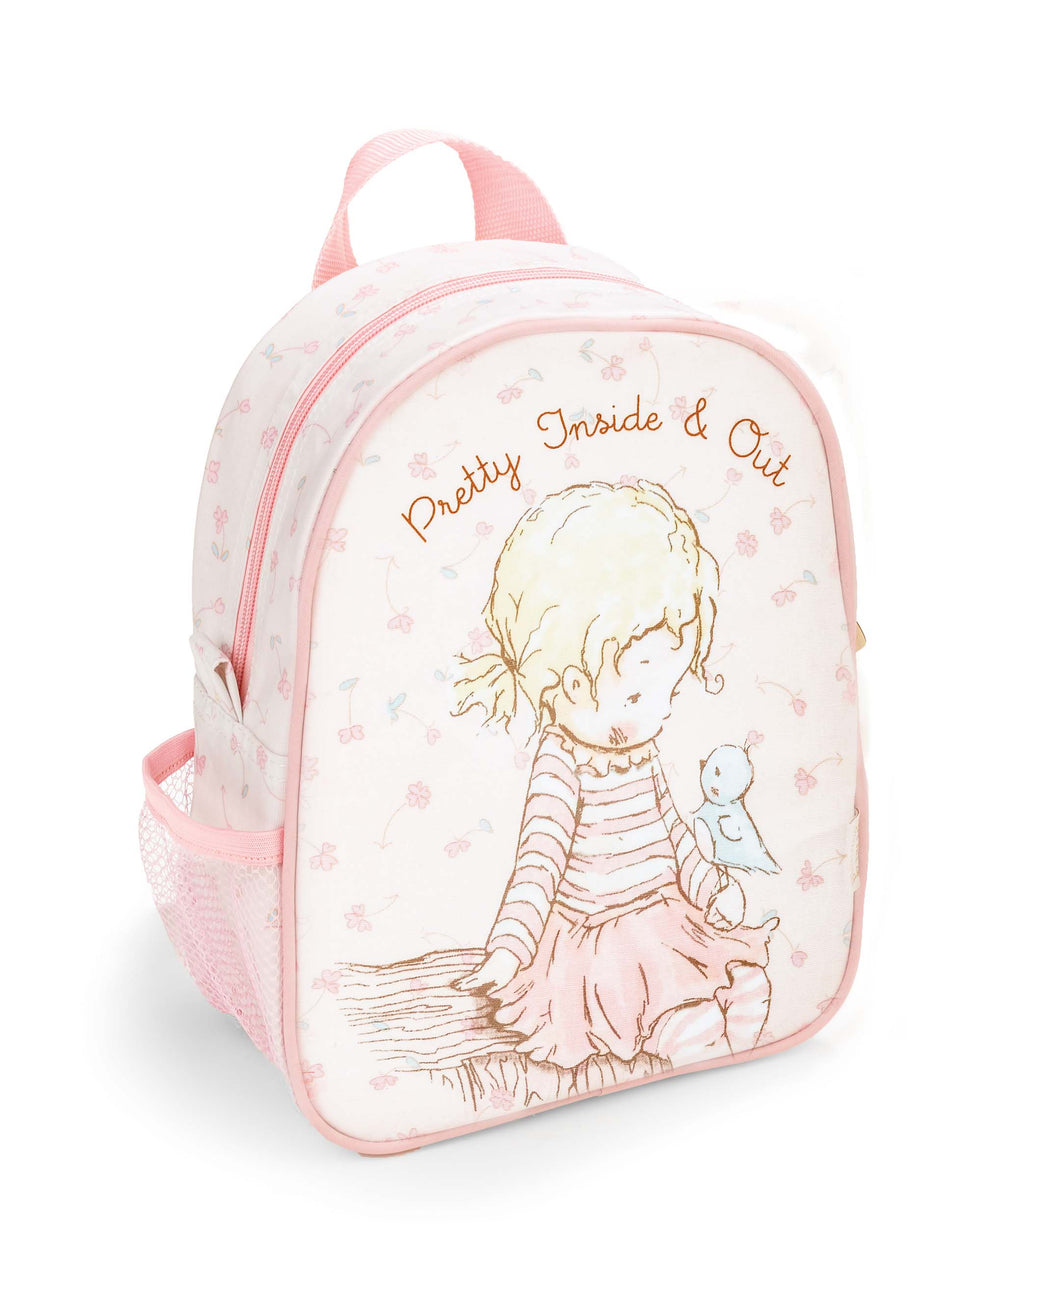 Pretty Girl Backpack